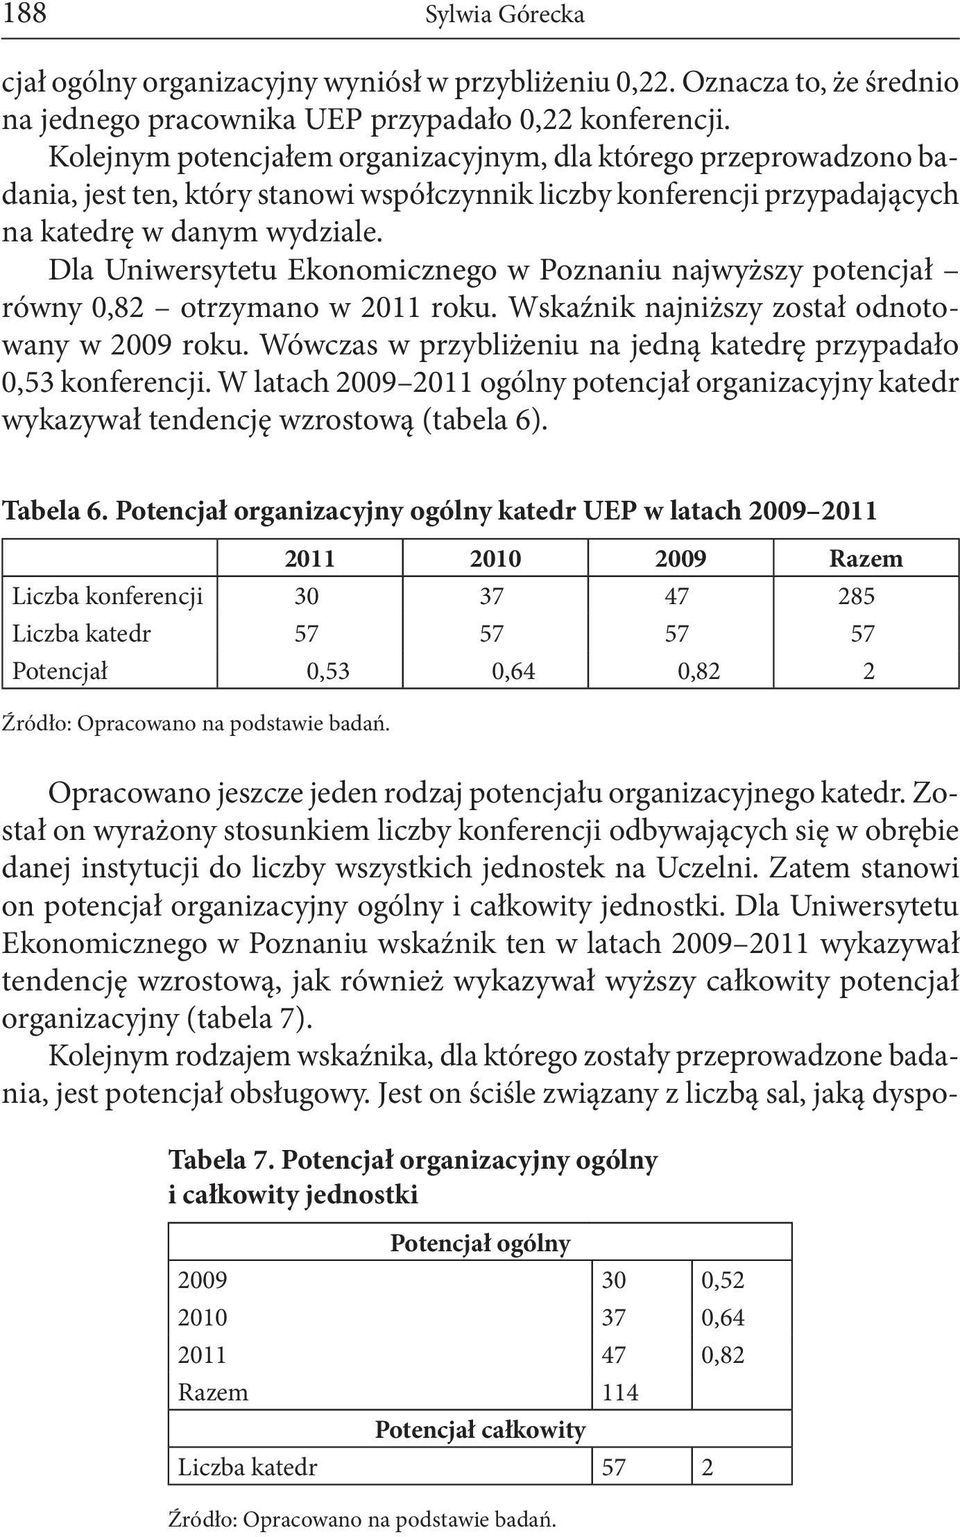 Dla Uniwersytetu Ekonomicznego w Poznaniu najwyższy potencjał równy 0,82 otrzymano w 2011 roku. Wskaźnik najniższy został odnotowany w 2009 roku.